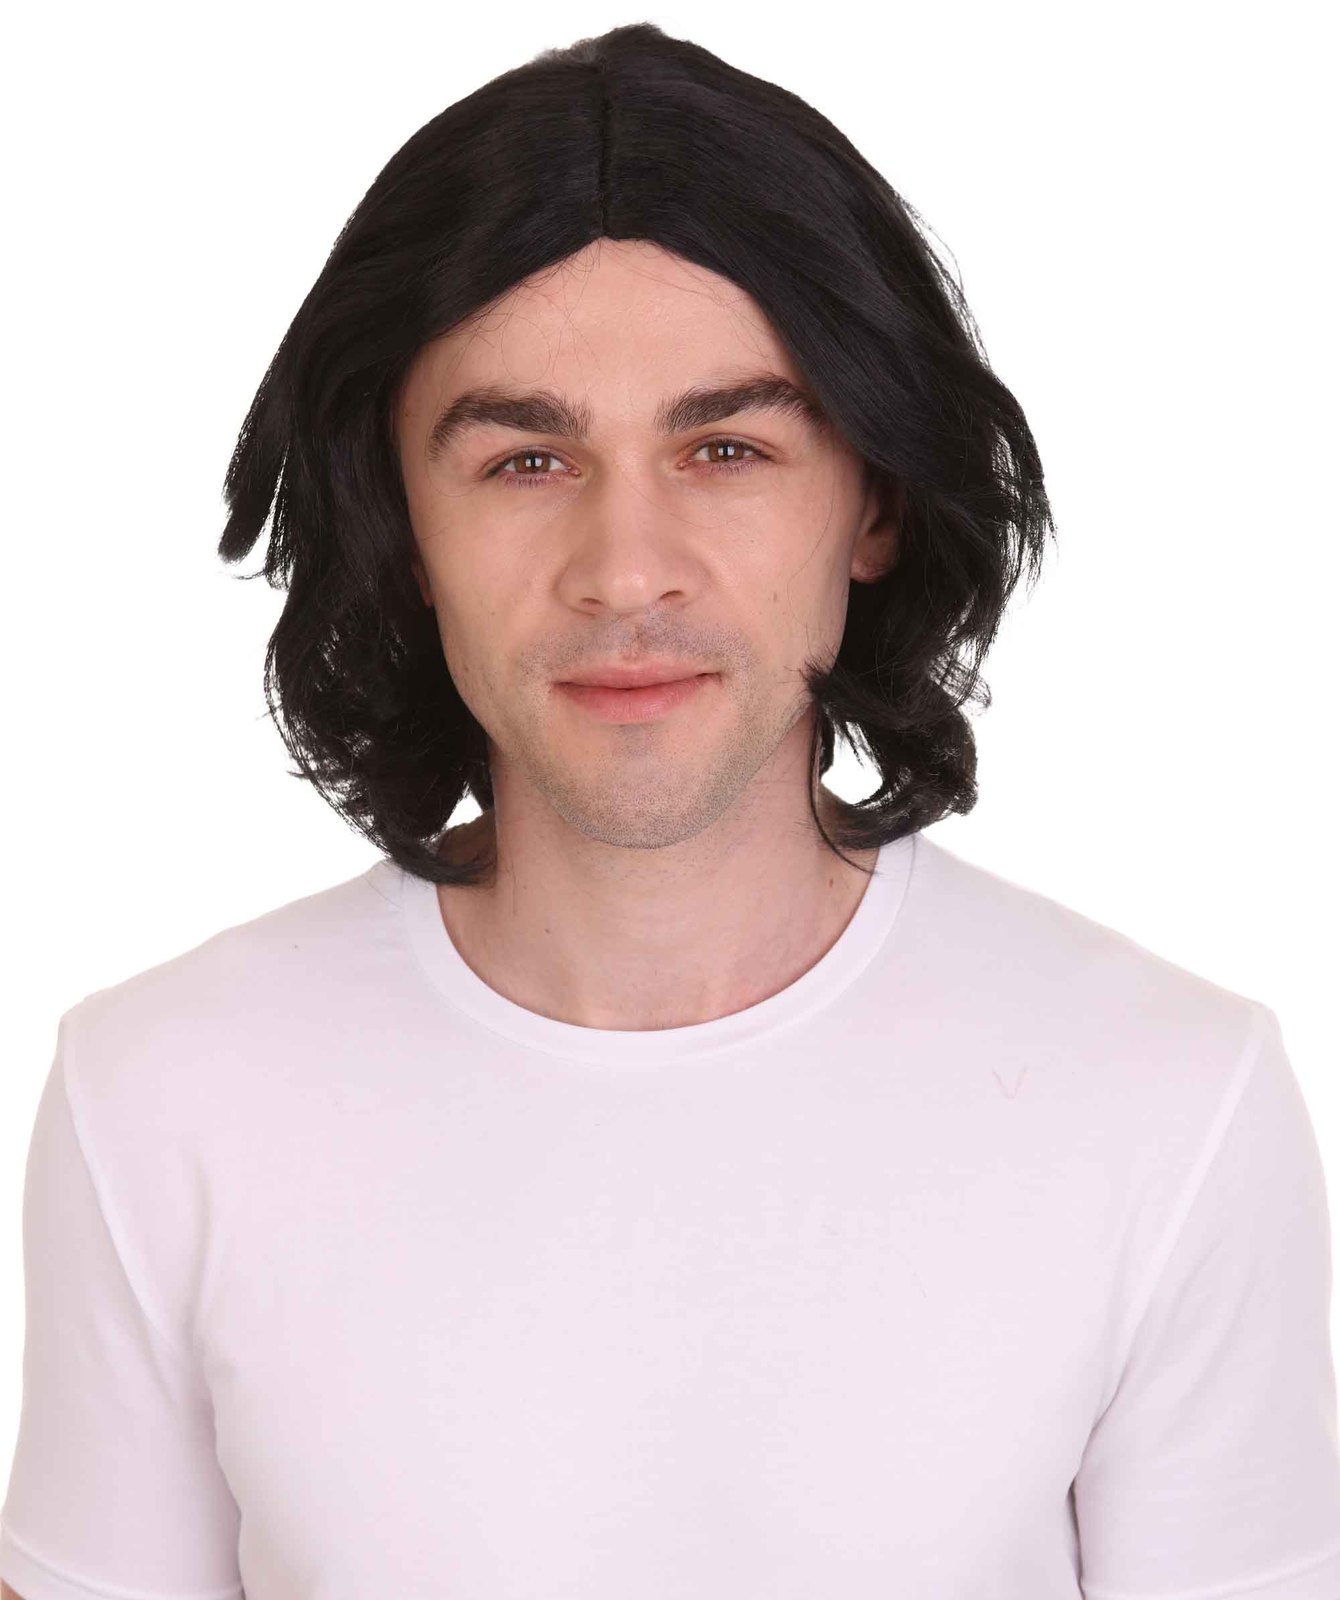 Men's Shoulder Length Straight Snape Dark Arts Wig | Adult HM-1366 ...